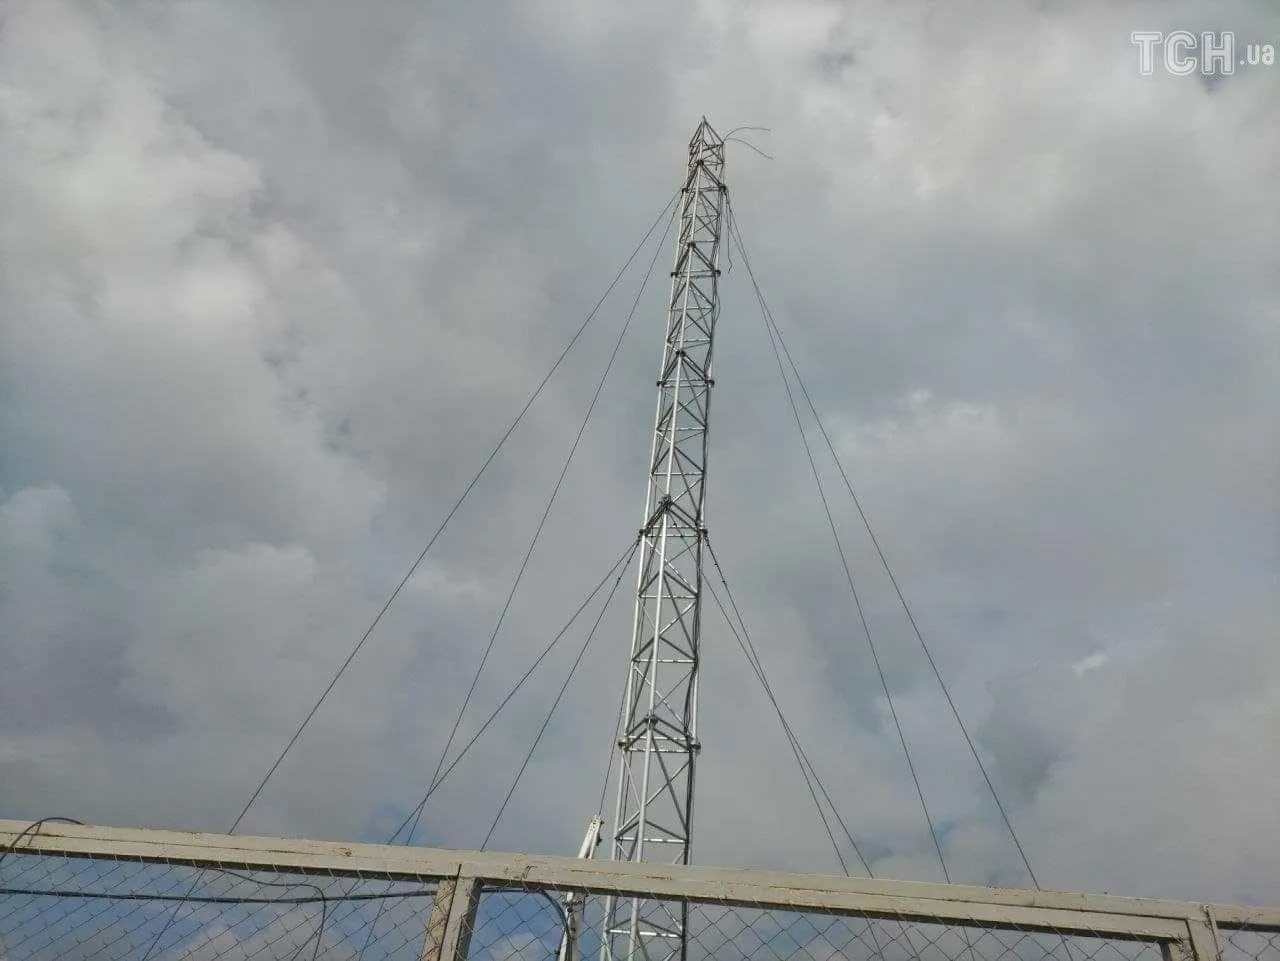 Вежа зі спостережною камерою ОБСЄ